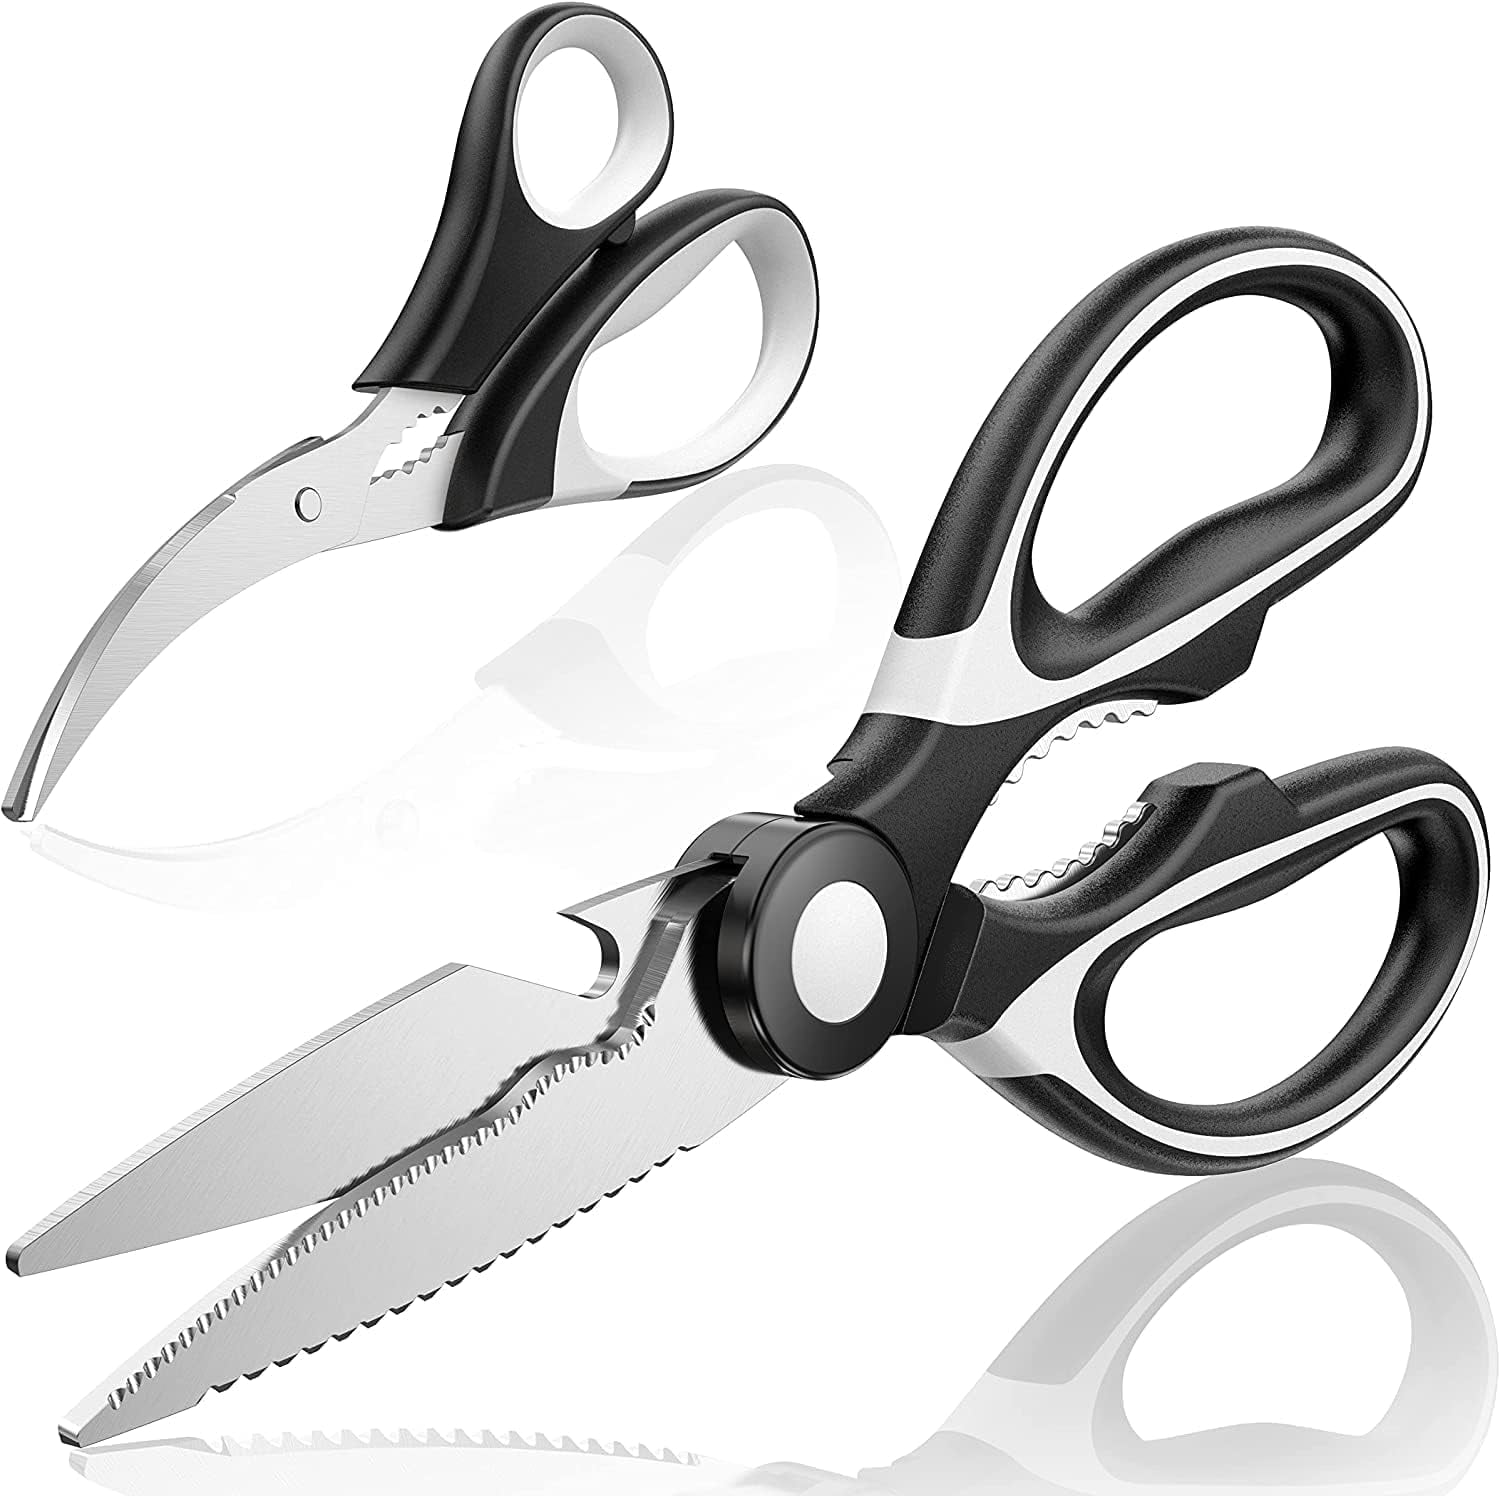 Muerk Upgrade Heavy Duty Stainless Steel Kitchen Scissors